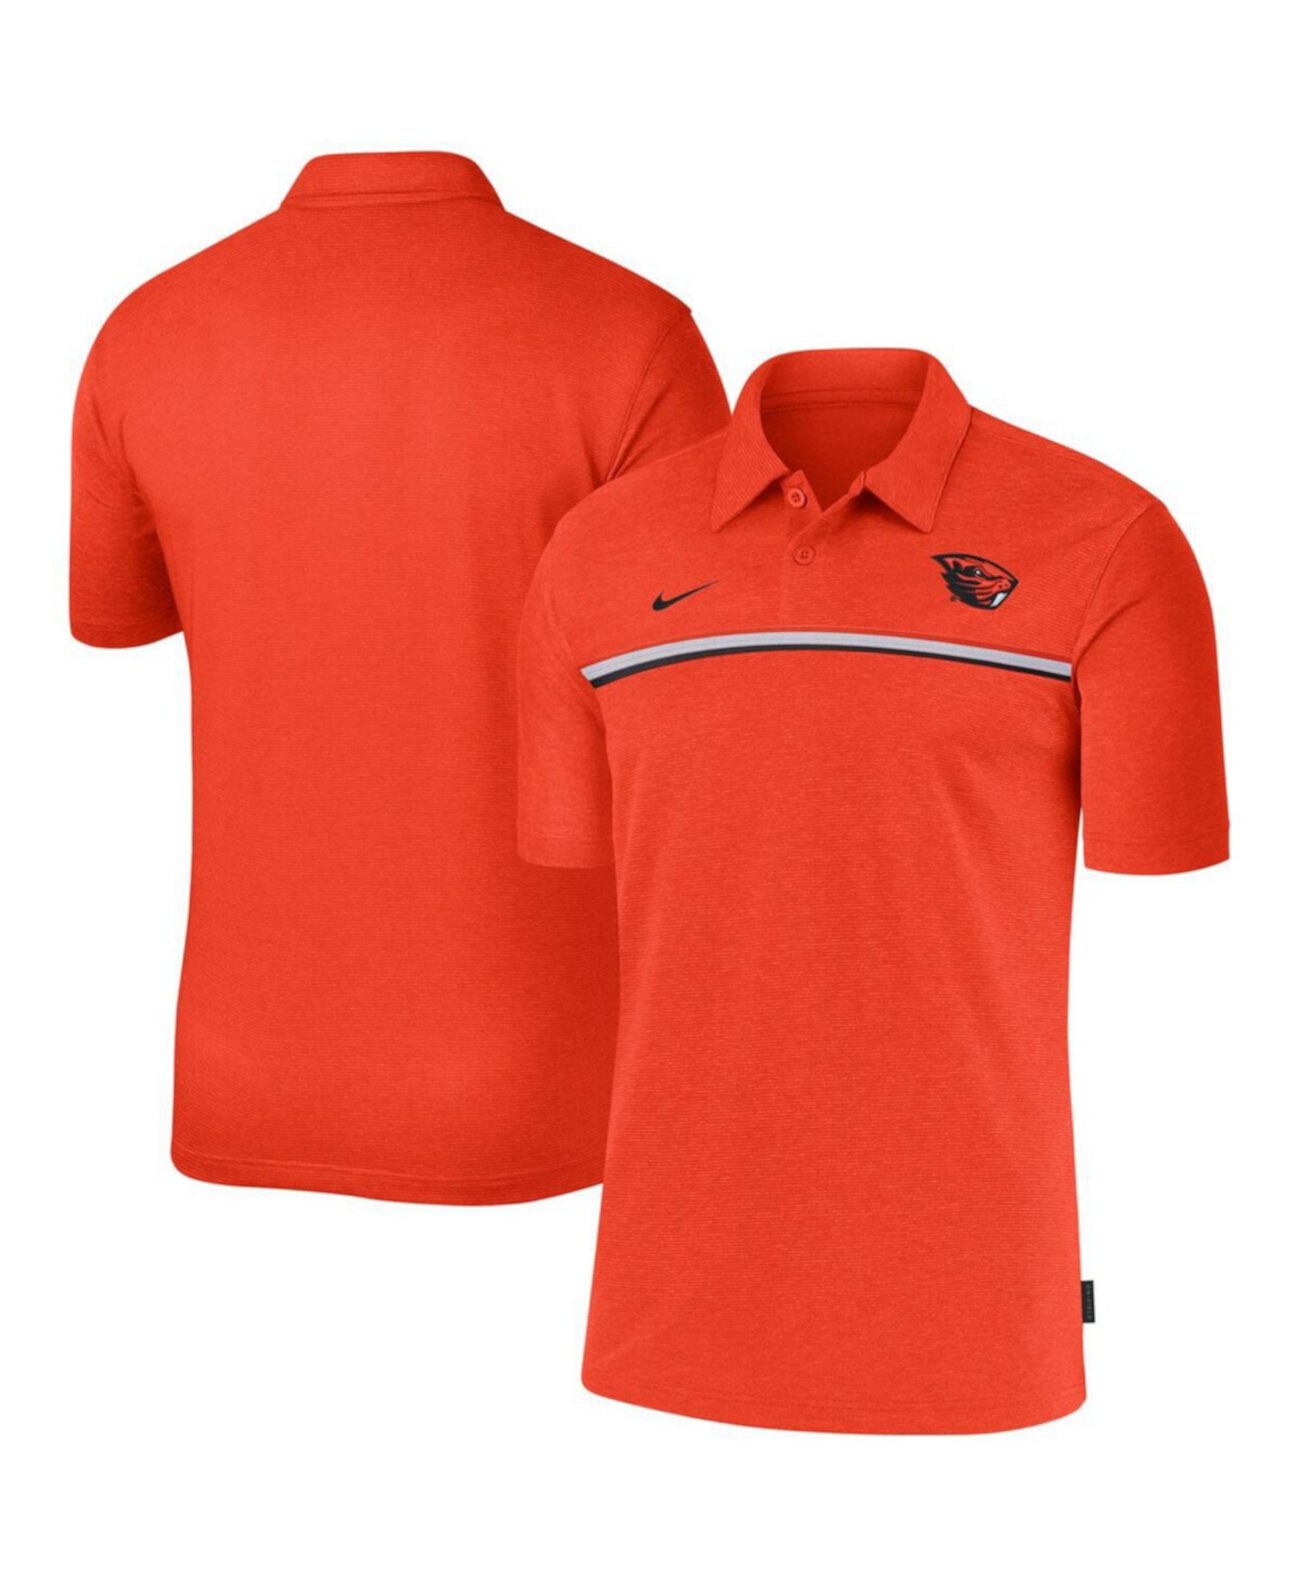 Мужская оранжевая рубашка-поло Coaches Performance раннего сезона Oregon State Beavers 2020 Nike